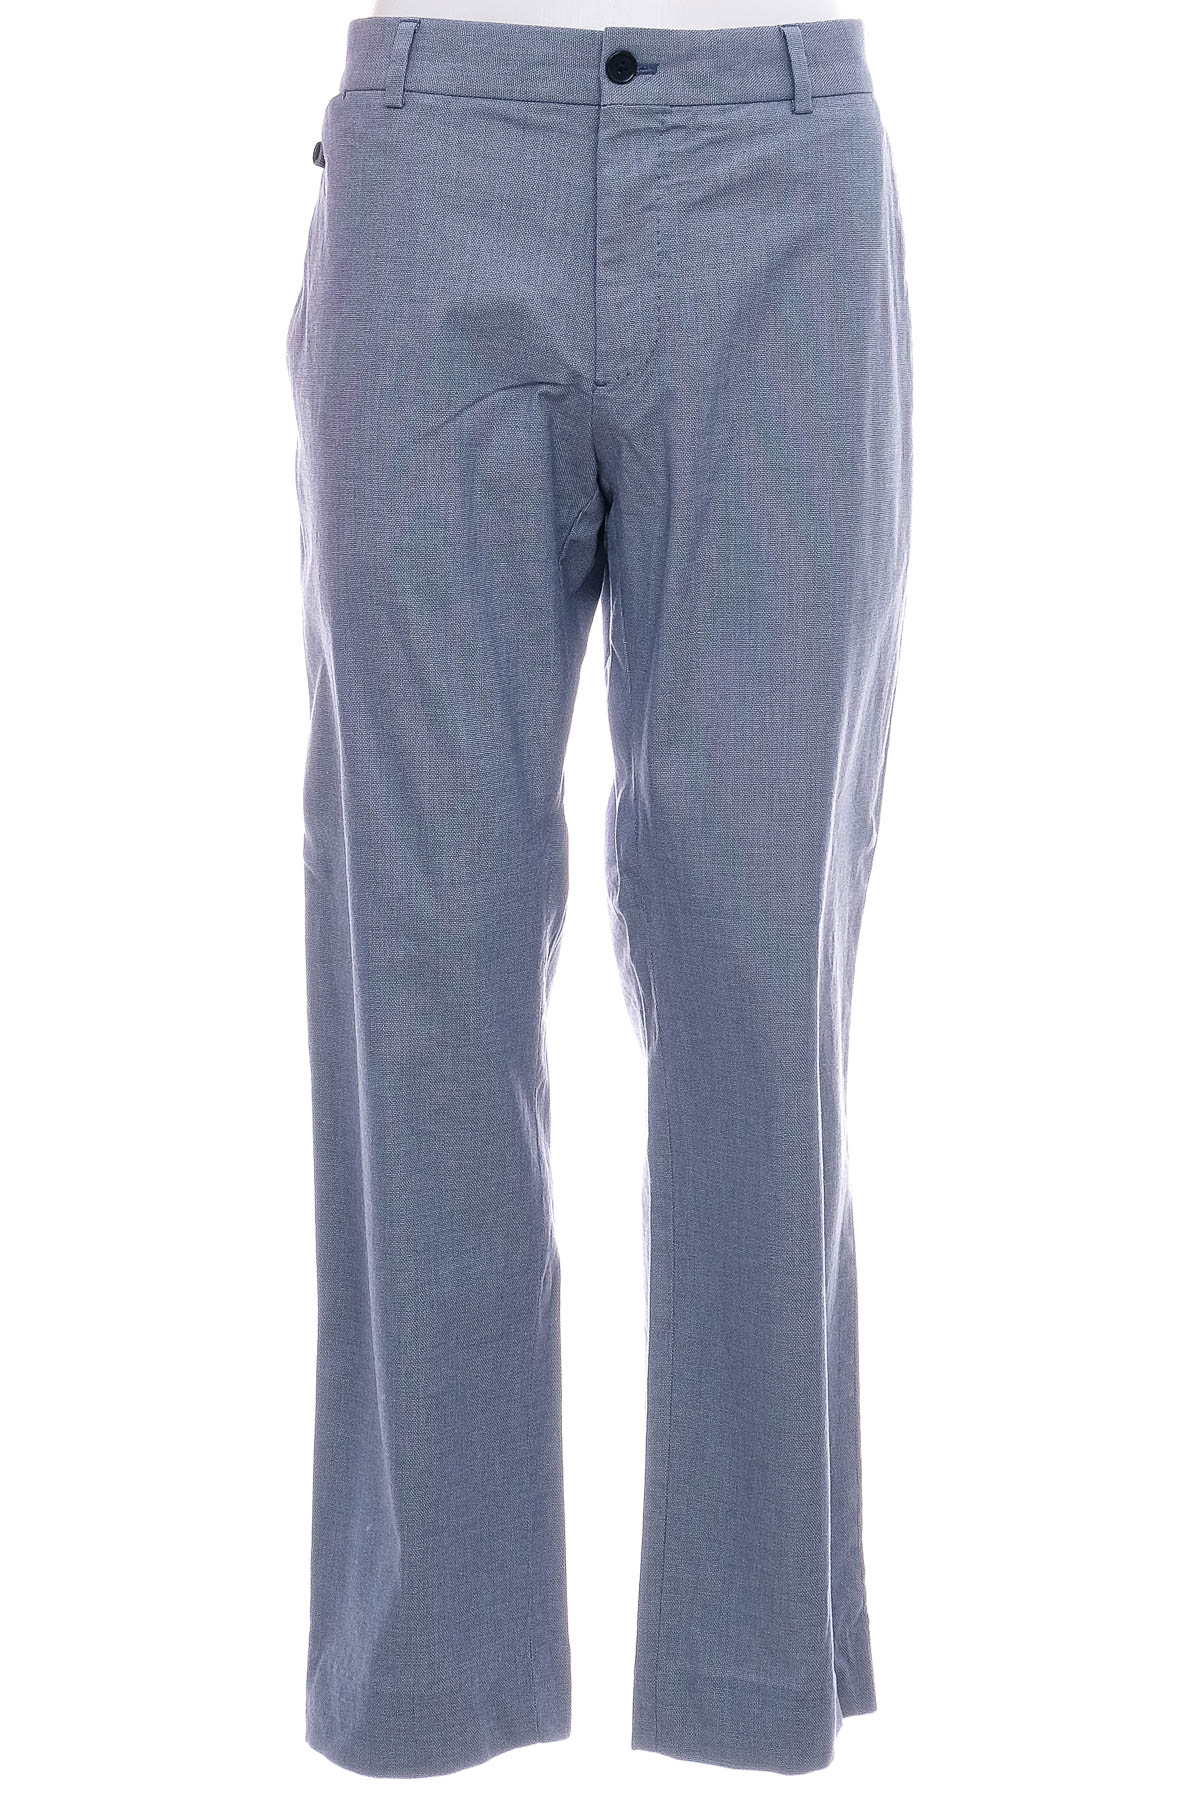 Pantalon pentru bărbați - SABA - 0